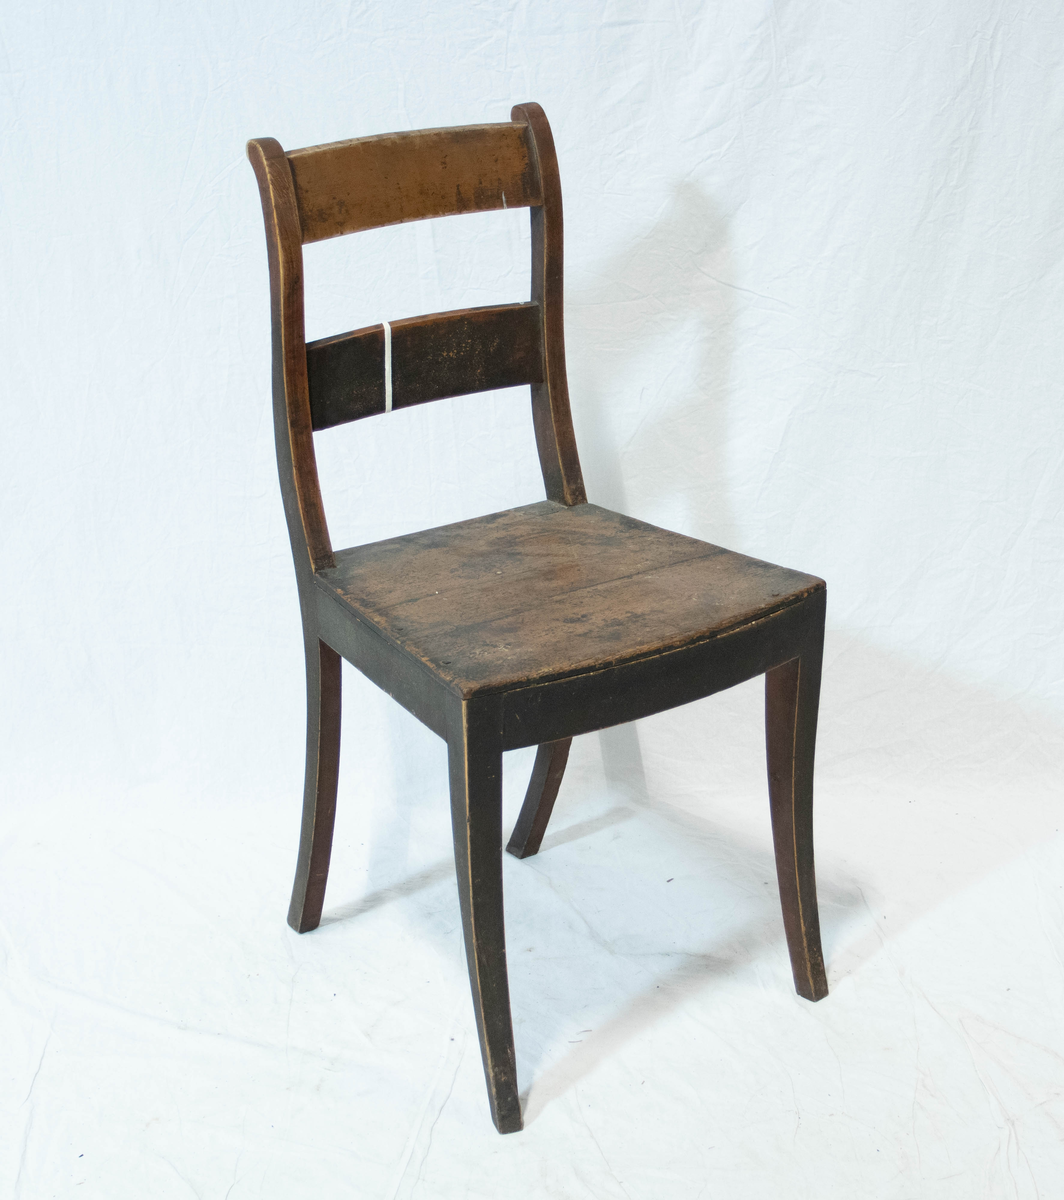 Stol av tre. Stolen har fire sabelformede ben og glatt sarg. Setet er trapeslignende med horisontalt buet fremkant.  Stolen har S-svungne ryggstaver forbundet med to glatte horisontale bretter.